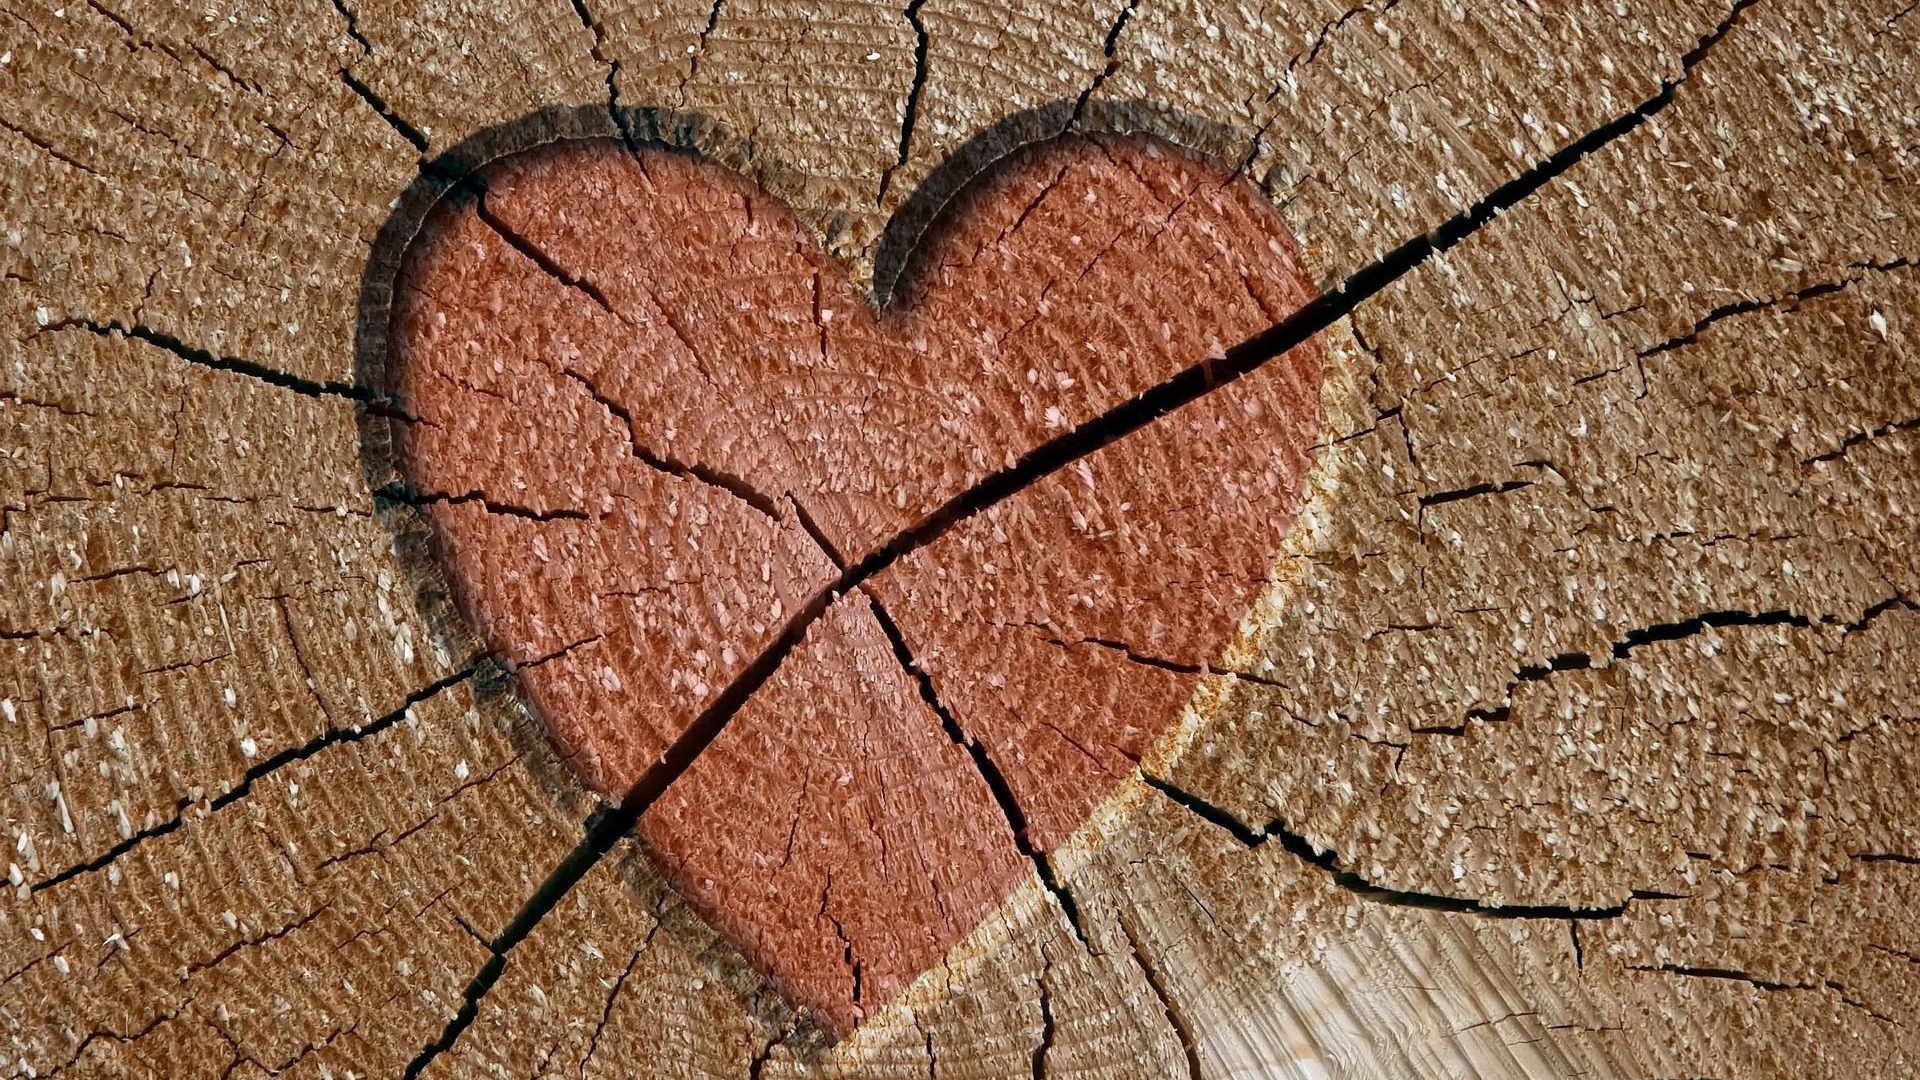 Brown Hearts Desktop Wallpaper 1